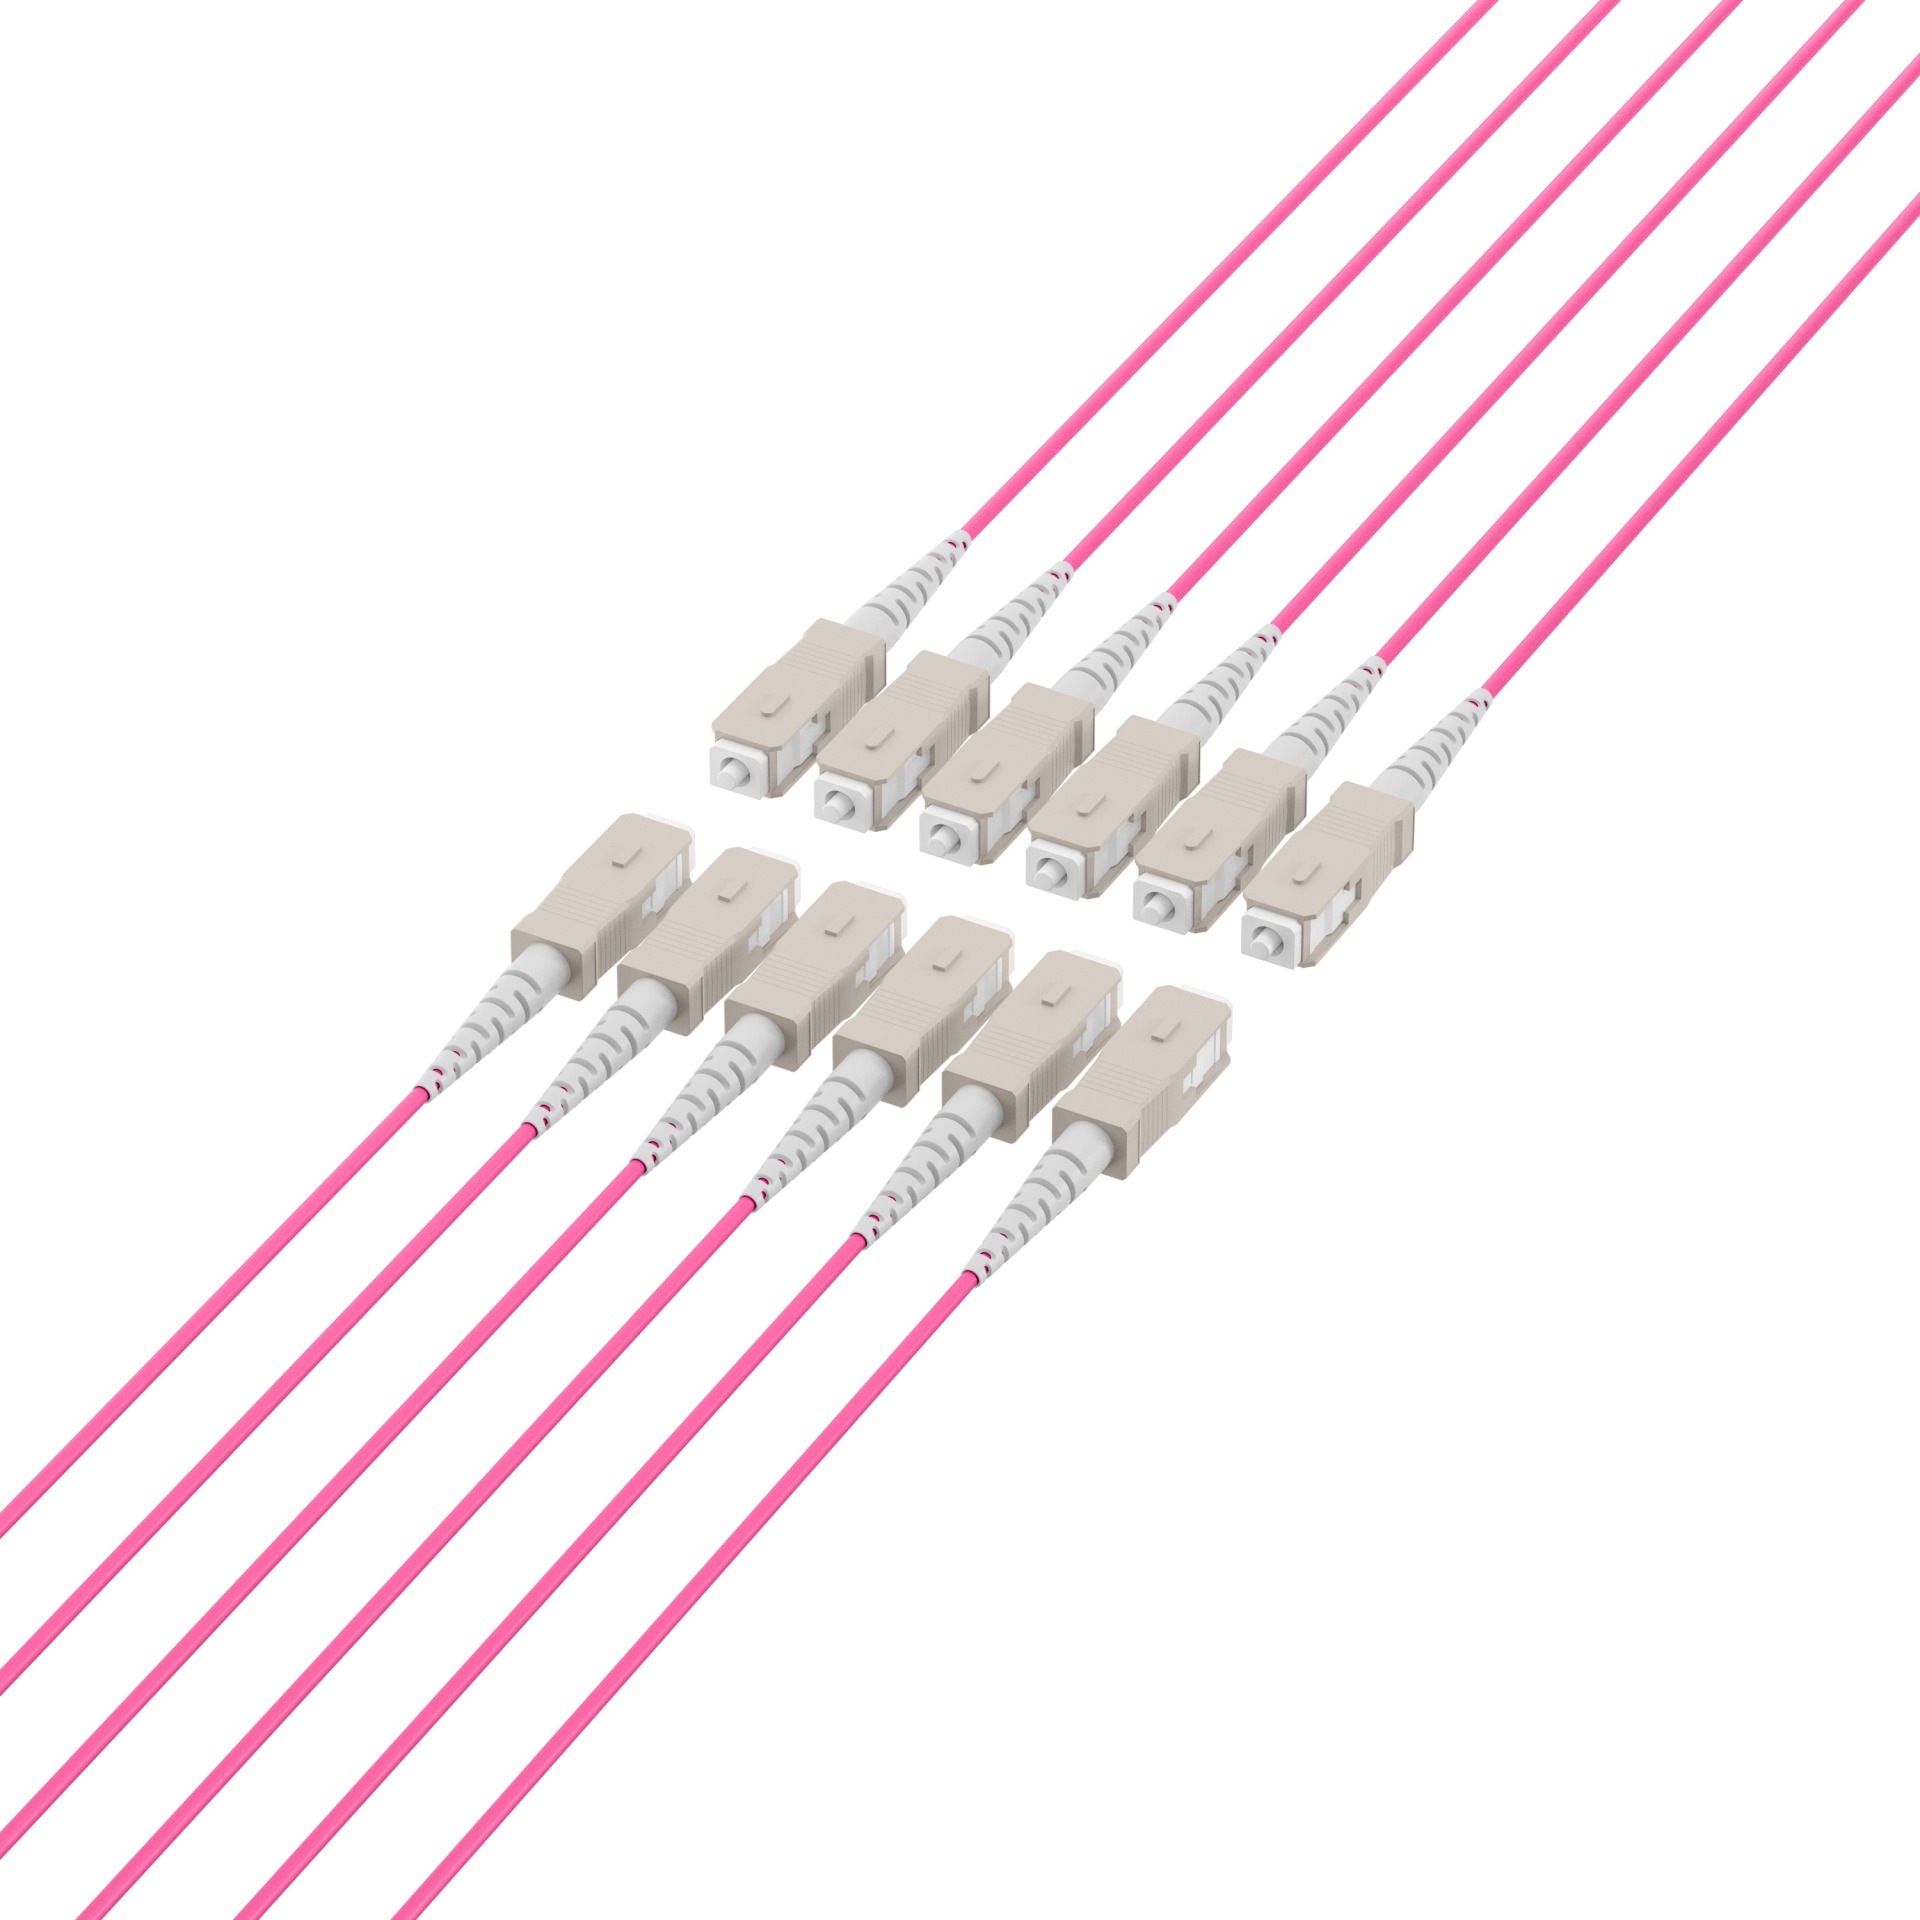 Trunk cable U-DQ(ZN)BH OM4 12G (1x12) SC-SC,30m Dca LSZH